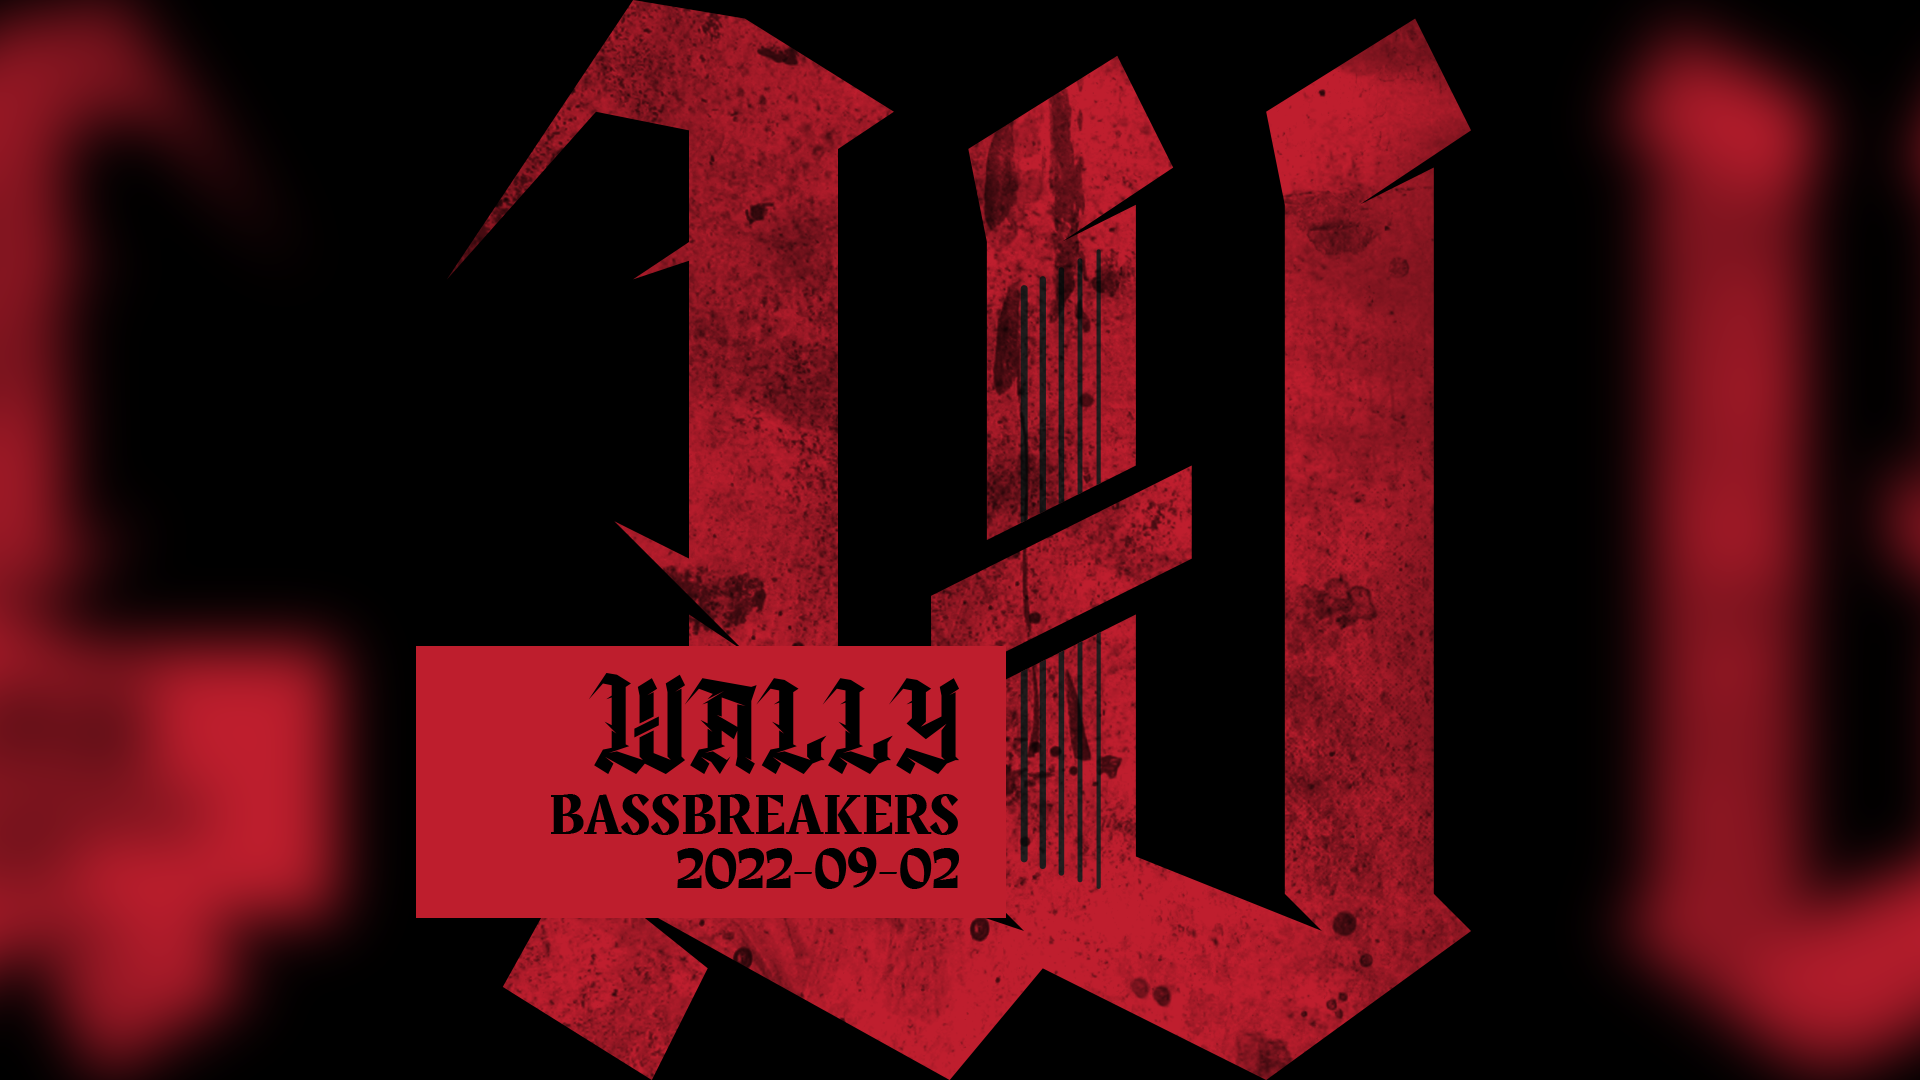 2022-09-02 – Bassbreakers All Vinyl DnB